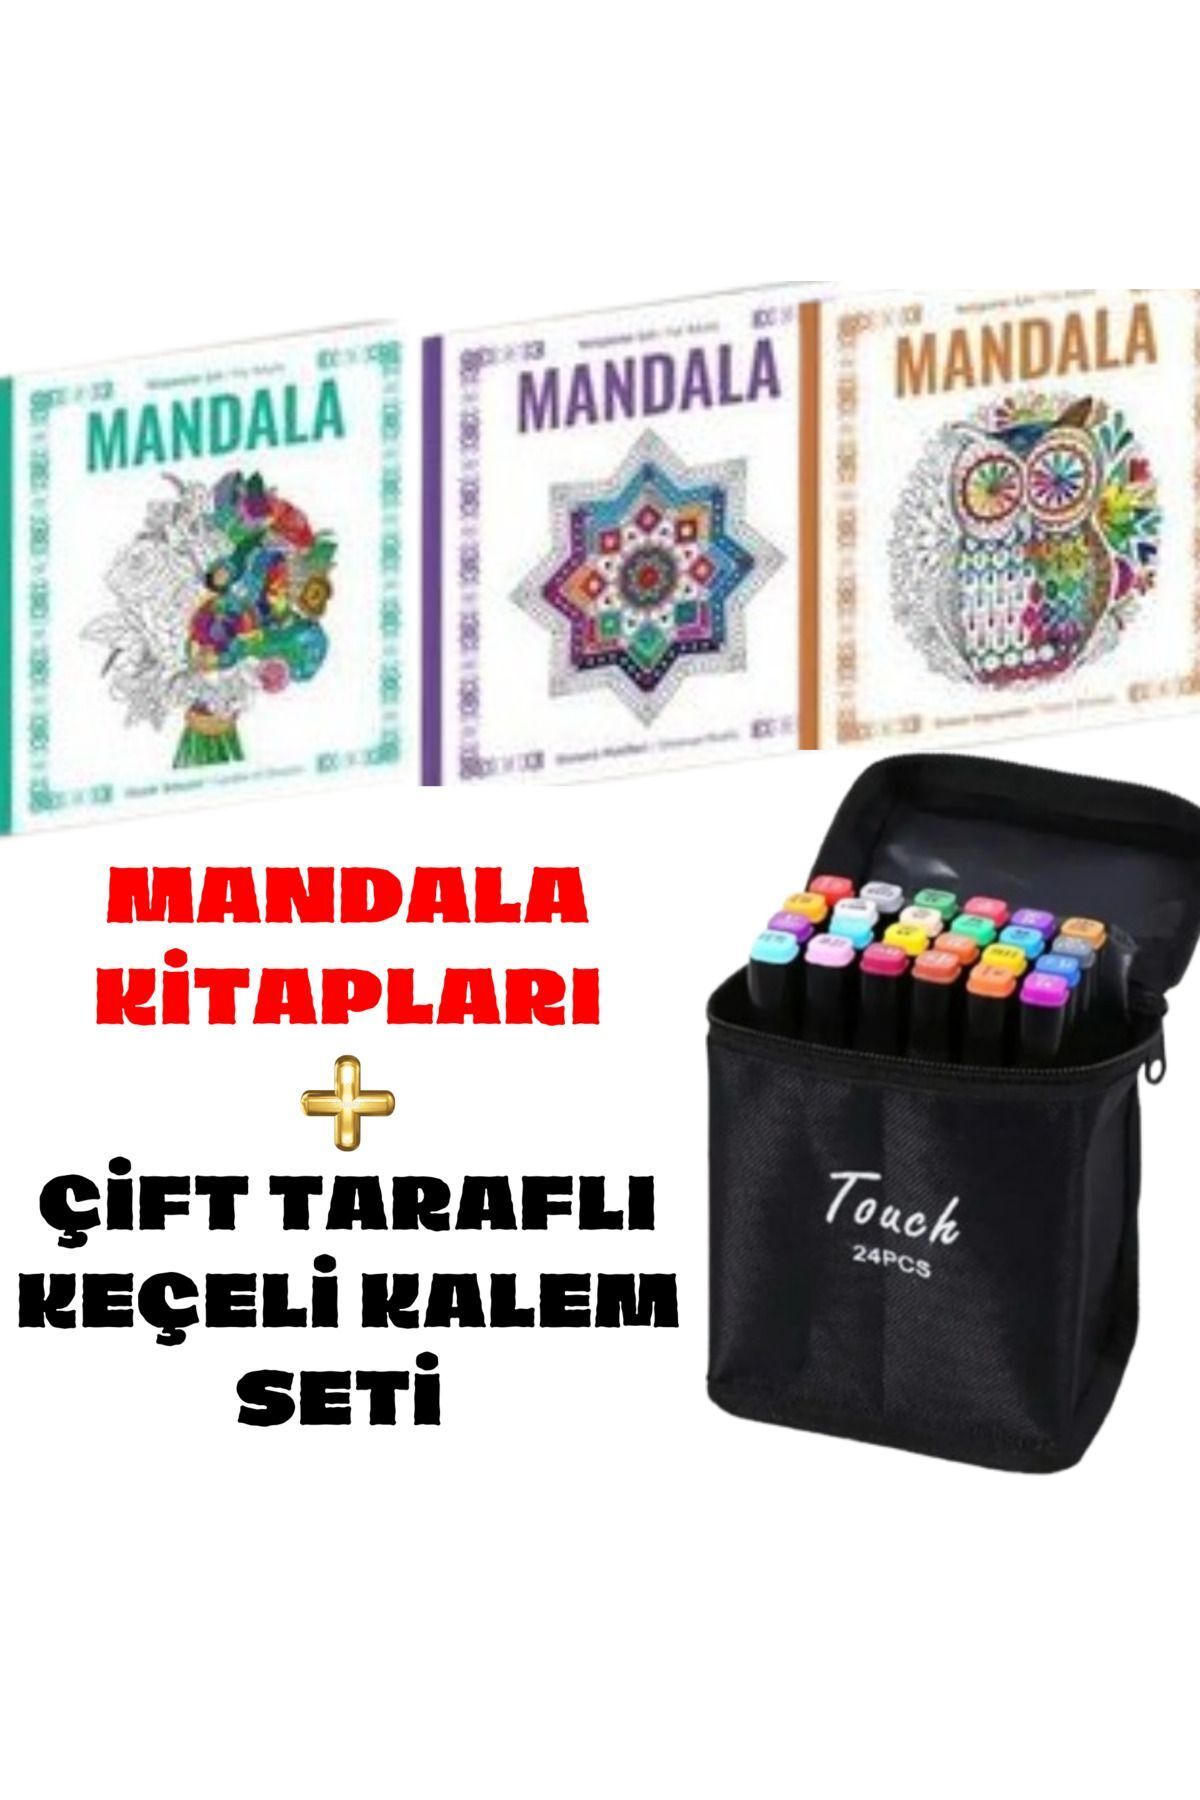 Dörtrenk Yayıncılık DörtRenk 3 Mandala Seti + 24 Marker Çantalı Keçeli Kalem Seti